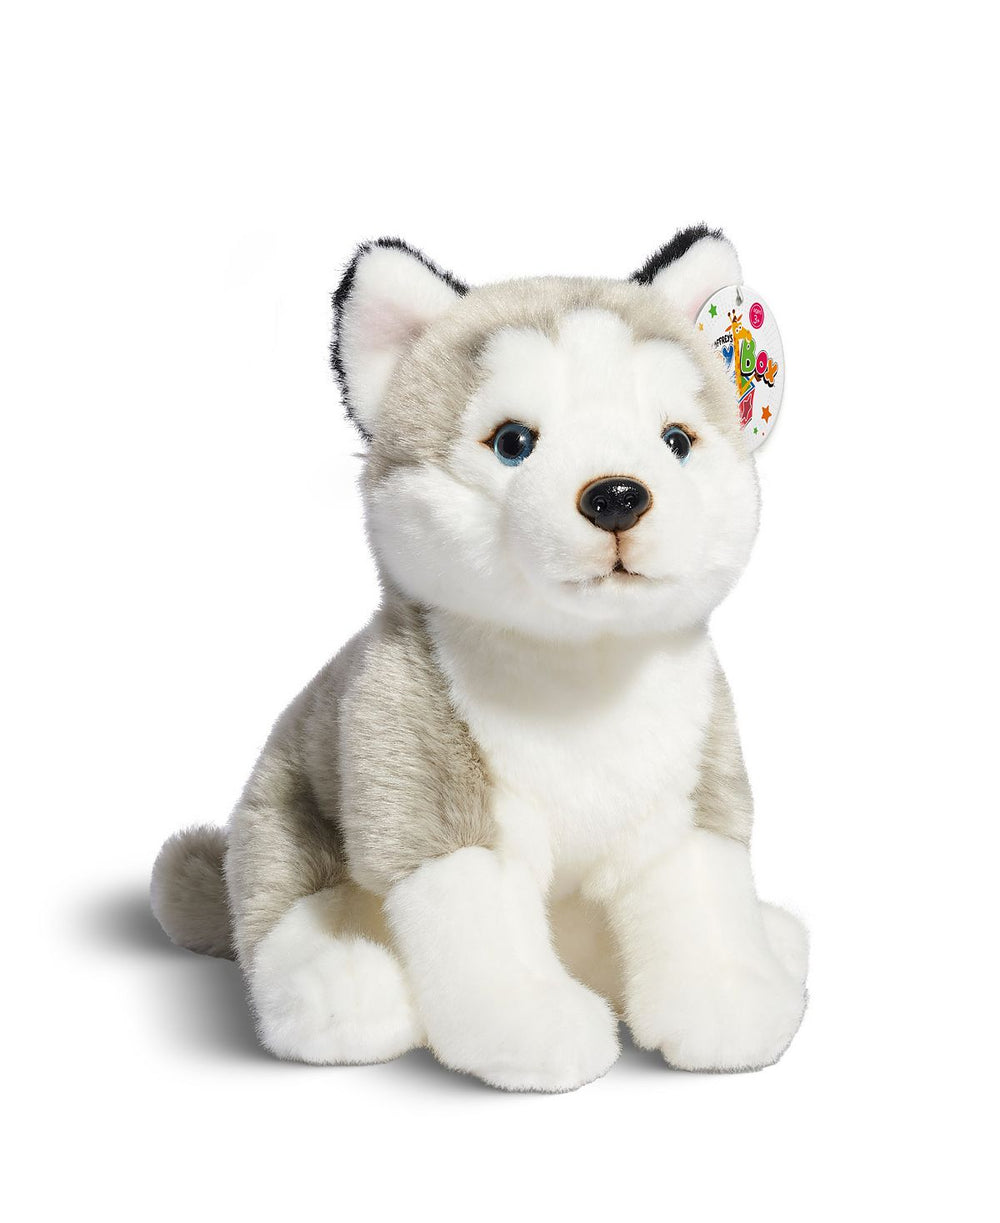 Geoffrey's Toy Box 10-inch Plush Floppy Husky Puppy - Exclusive to Macy's